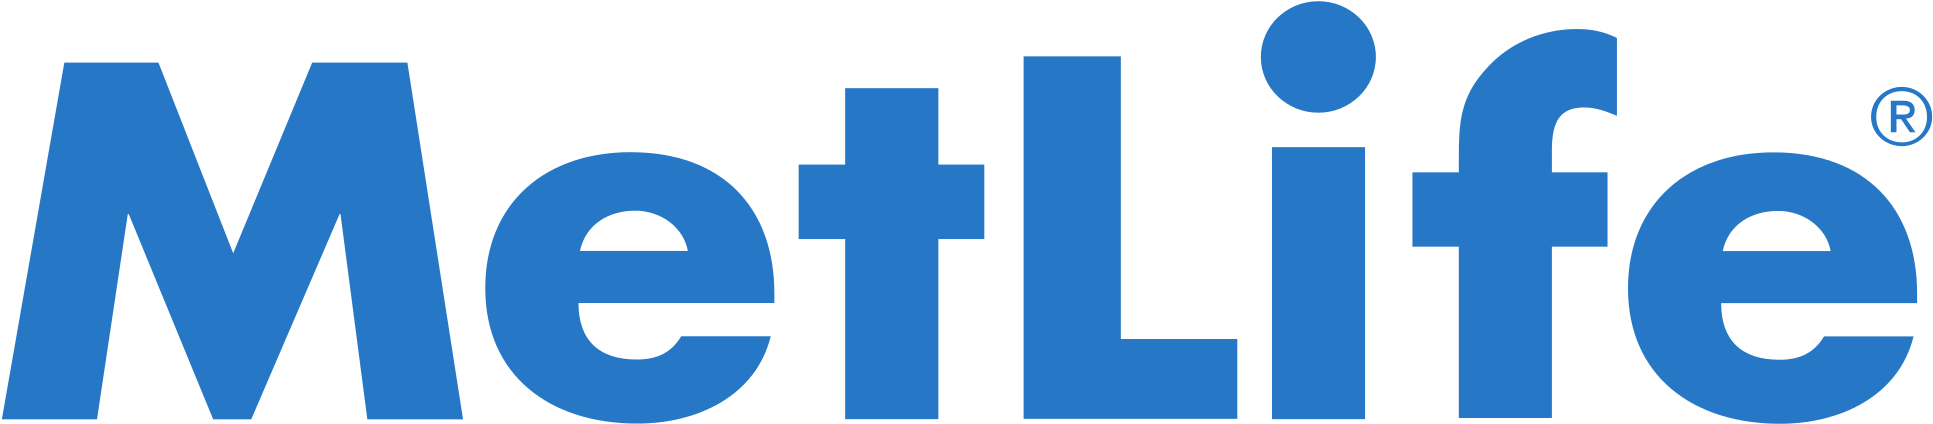 Metlife Insurance Logo Met Life - Metlife Logo Png (2000x467)